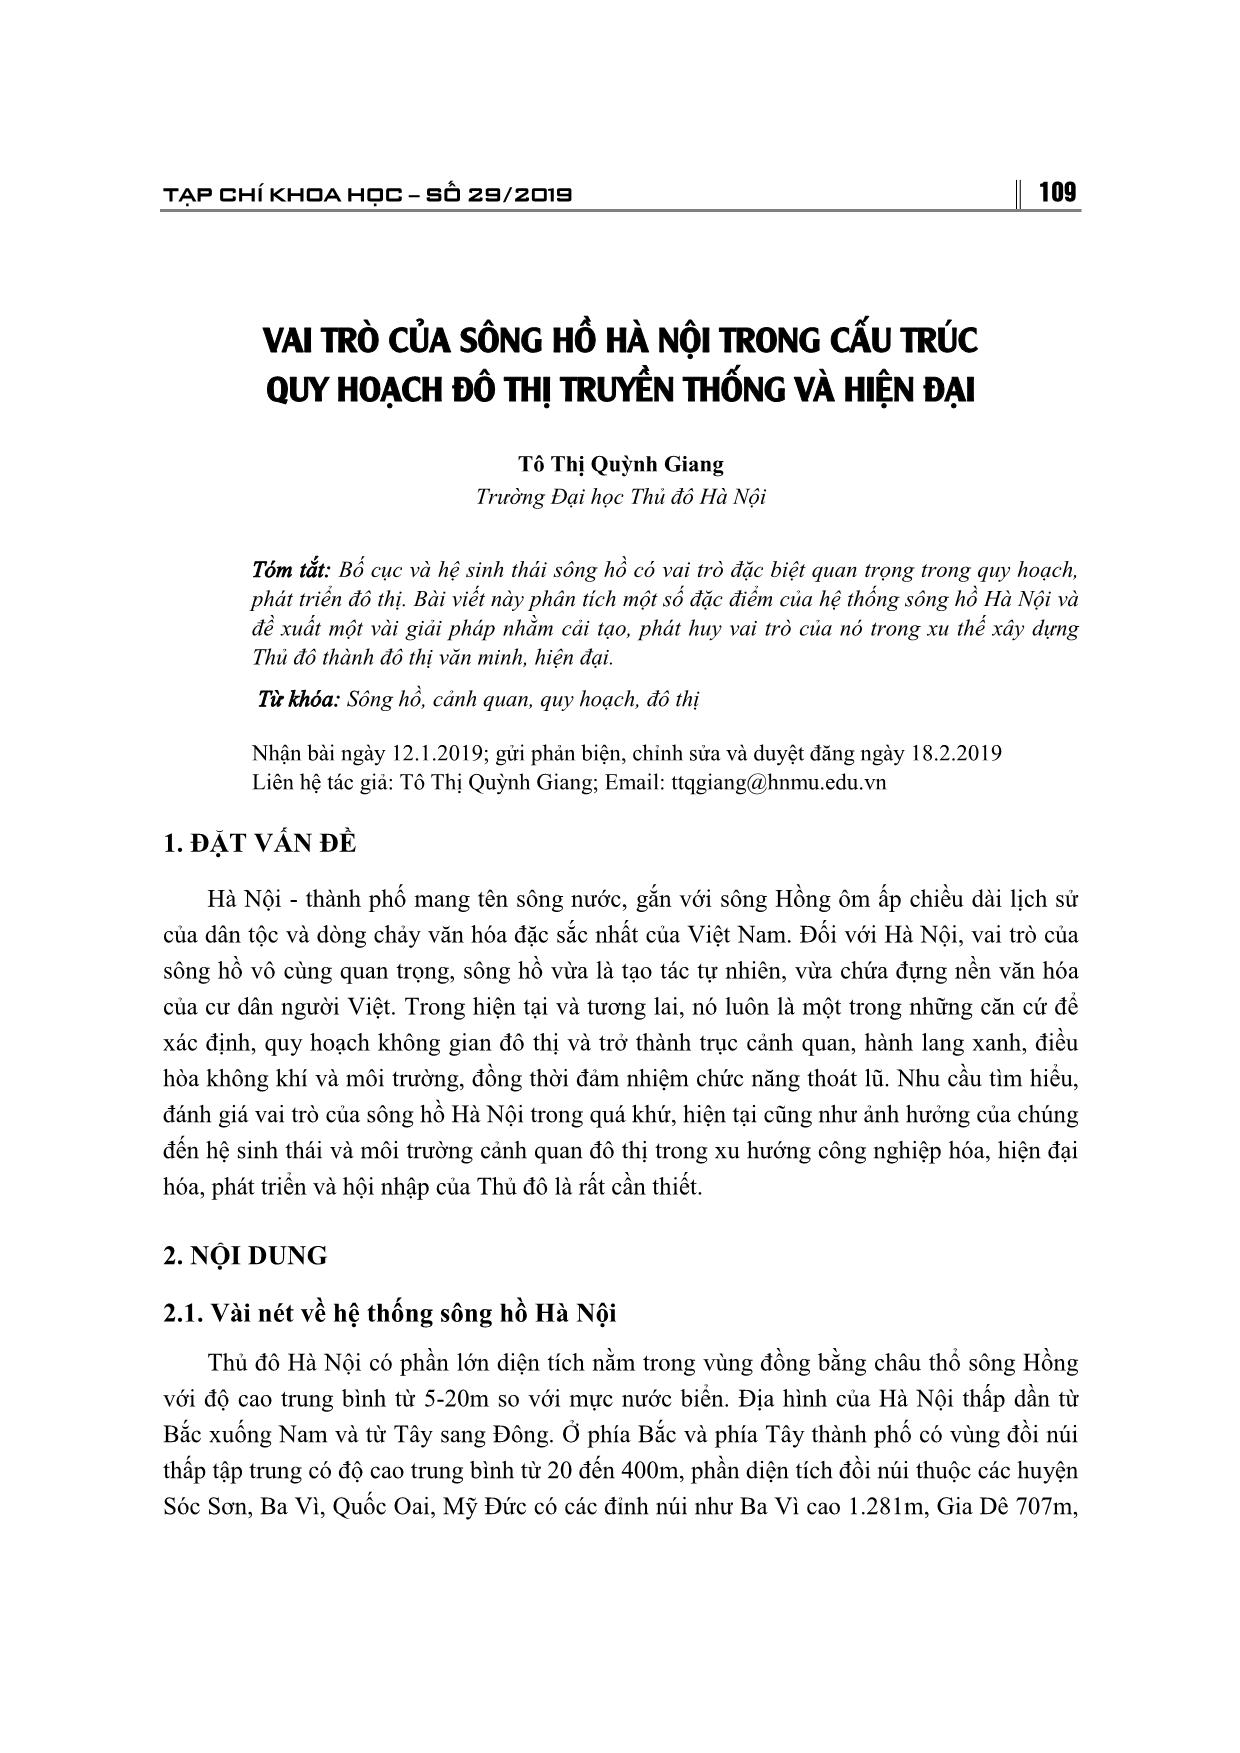 Vai trò của sông hồ Hà Nội trong cấu trúc quy hoạch đô thị truyền thống và hiện đại trang 1